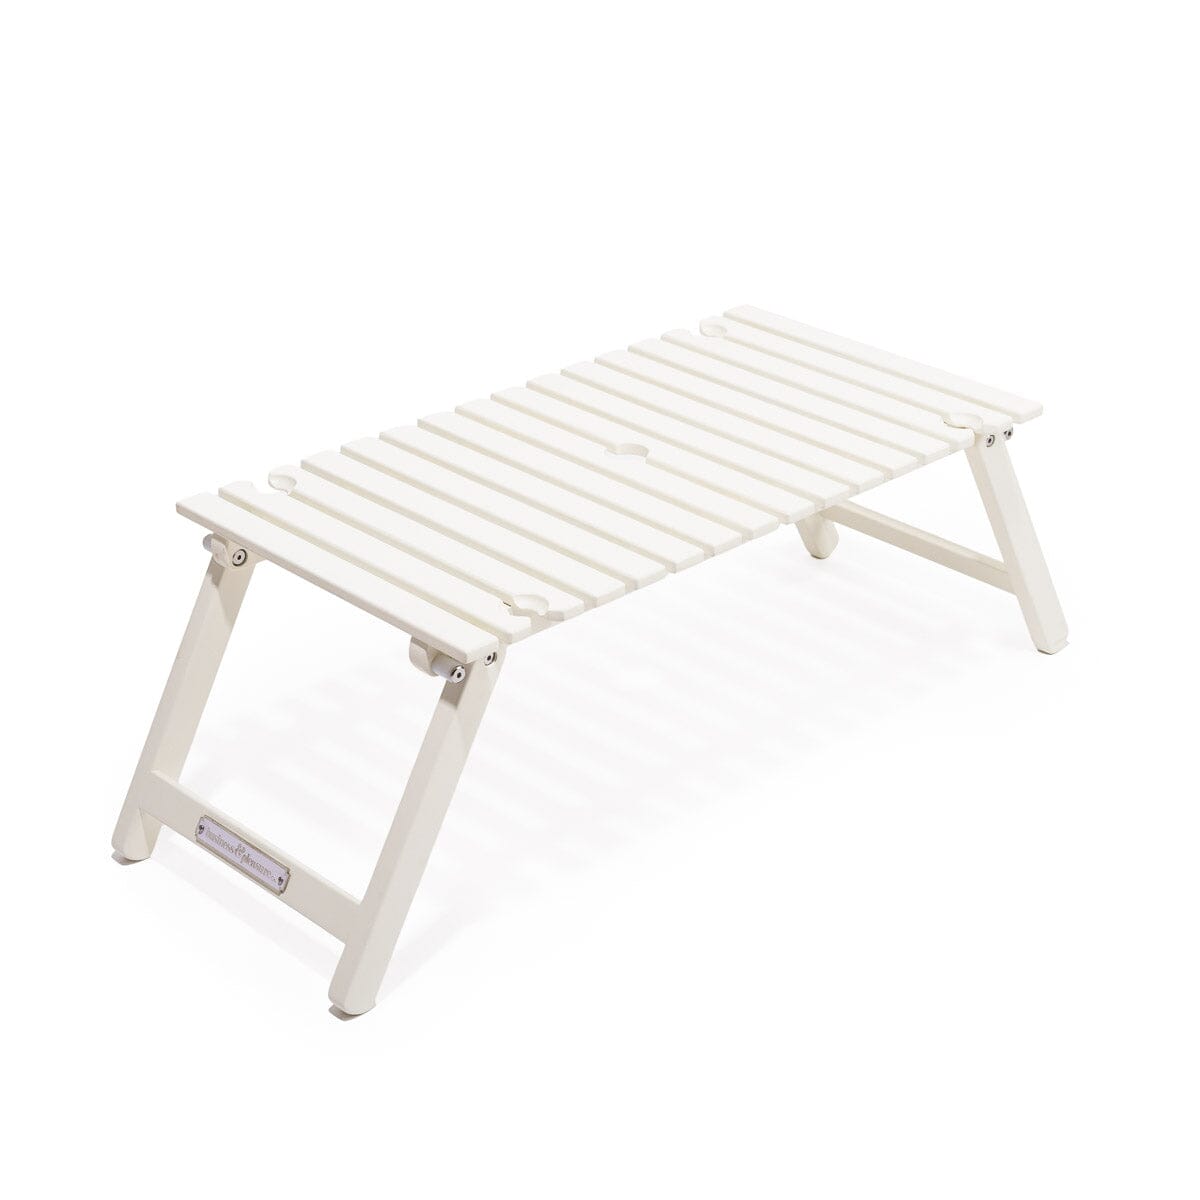 The Folding Picnic Table - Antique White Folding Table Business & Pleasure Co Aus 